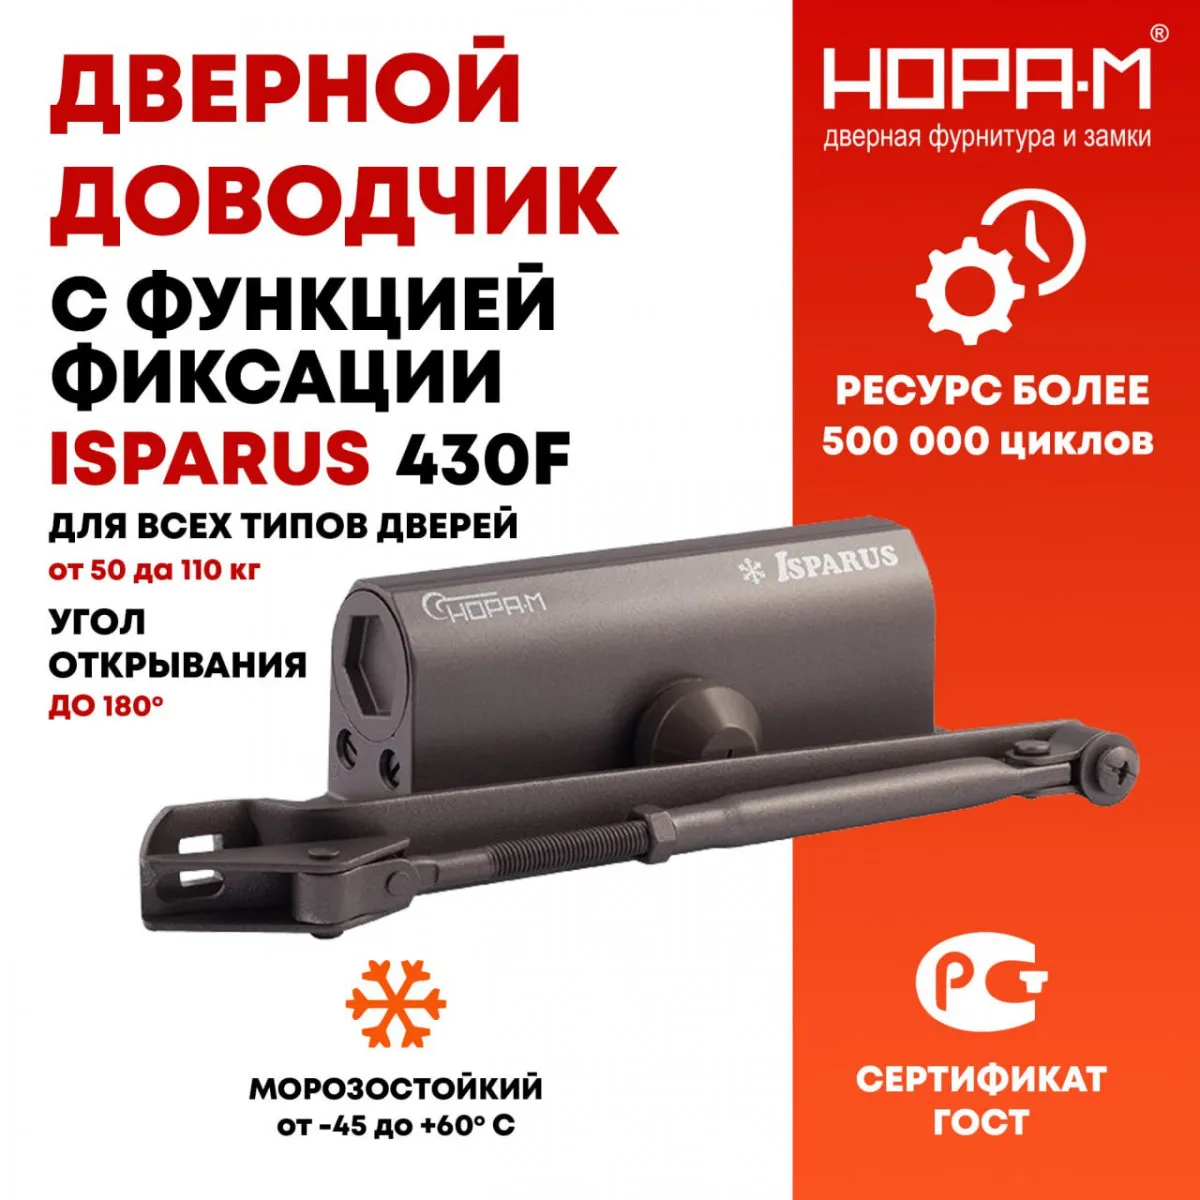 Eshik yopuvchi 430F ISPARUS 50 dan 110 kg gacha, ochiq holatda mahkamlash funktsiyasi bilan#1